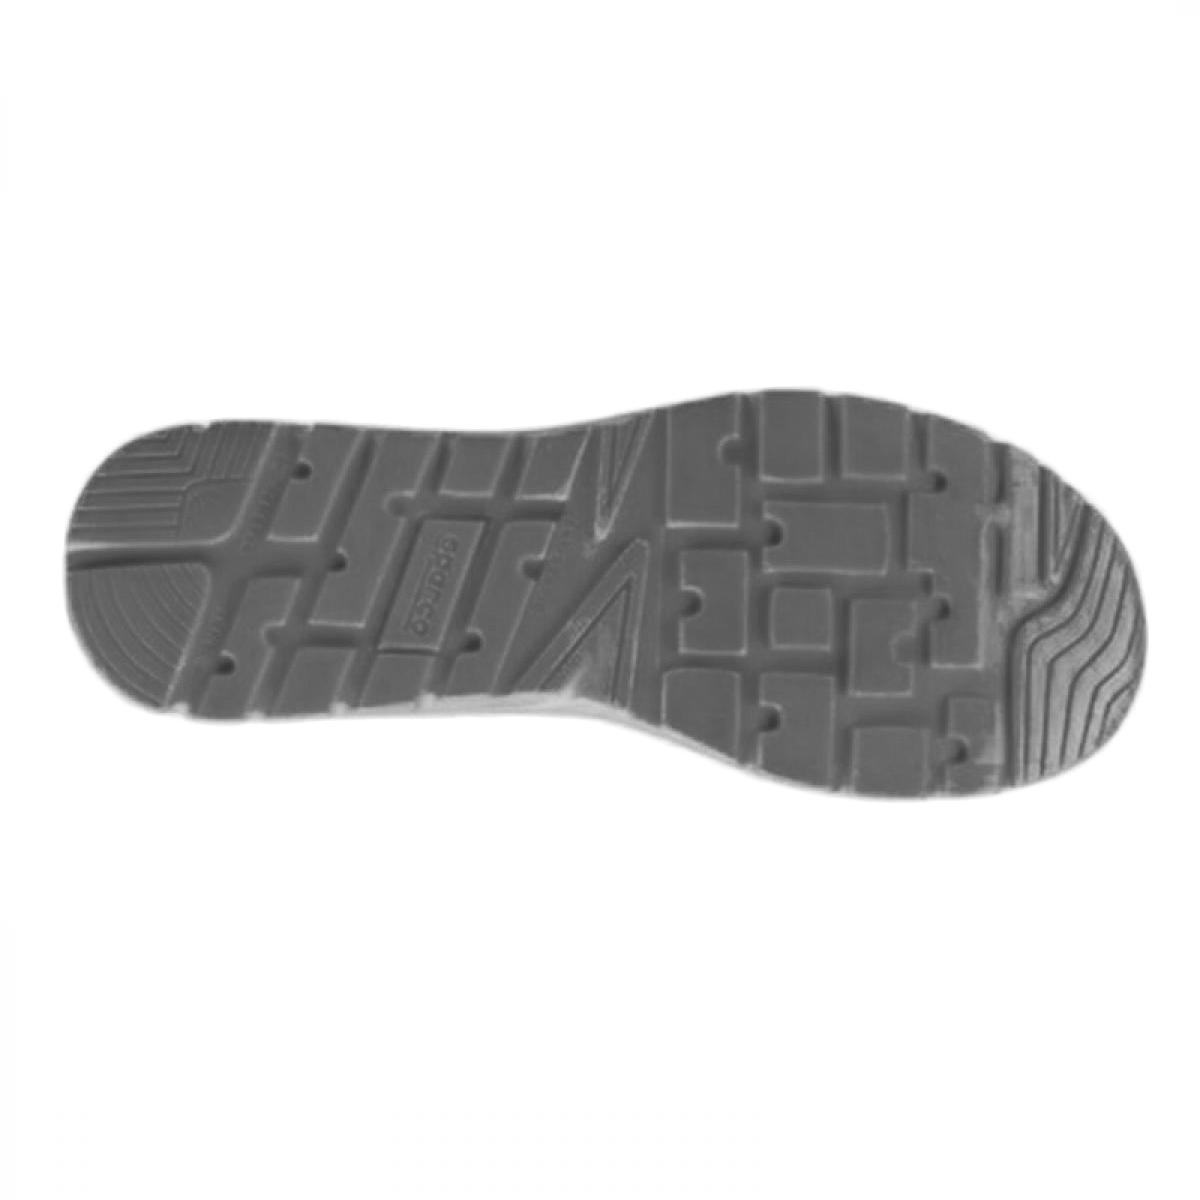 Zapatilla Seguridad Sparco // Precios Zapatillas Seguridad Sparco Negra